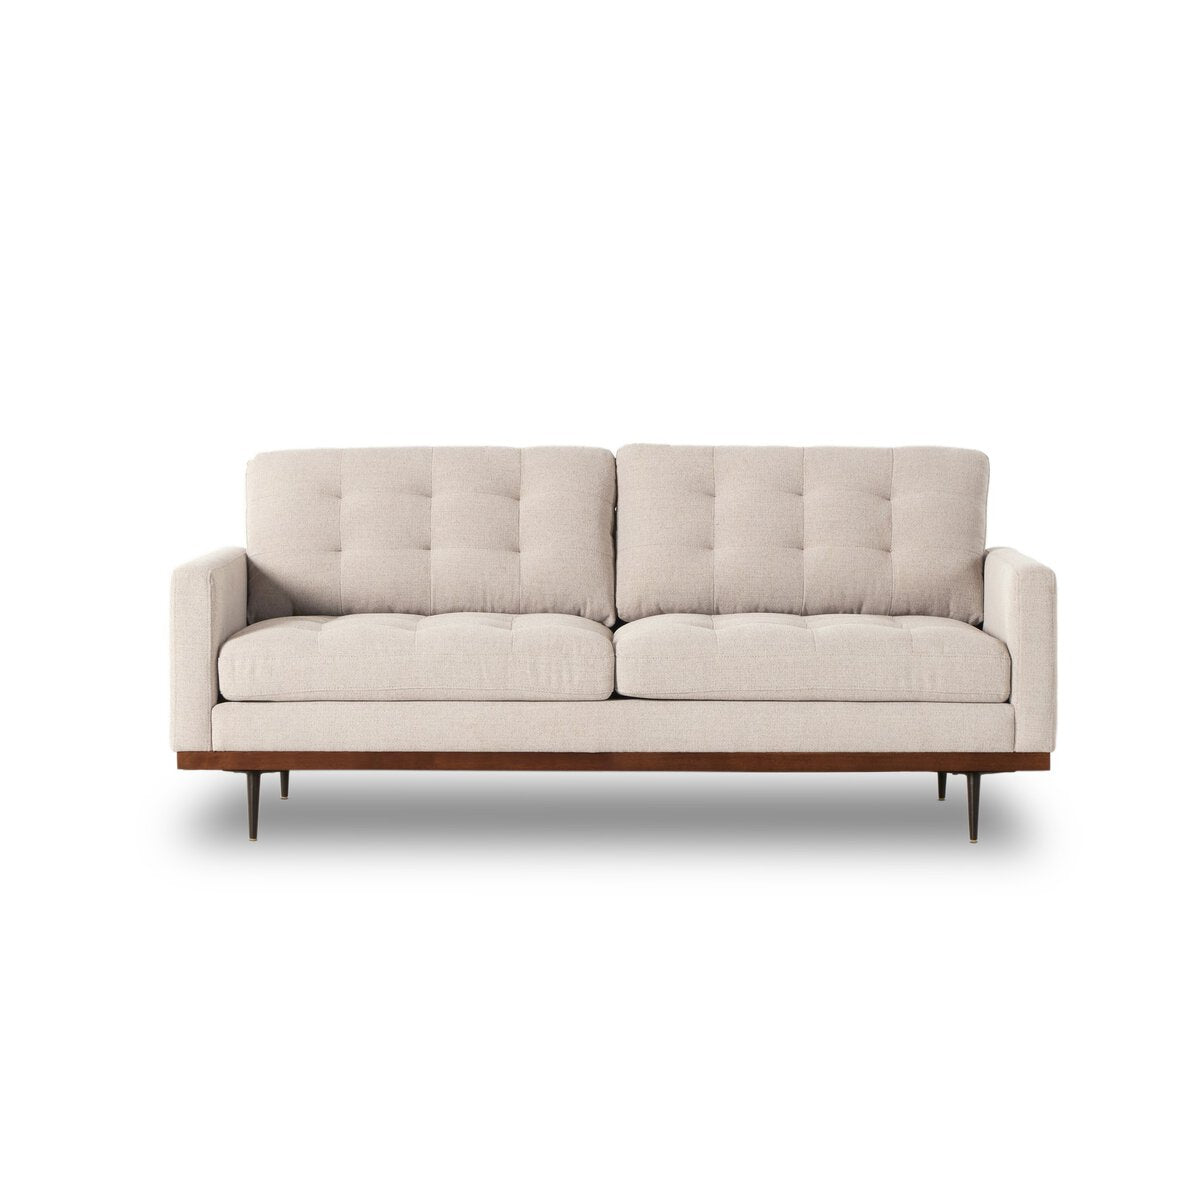 Tufted Leather Sofa